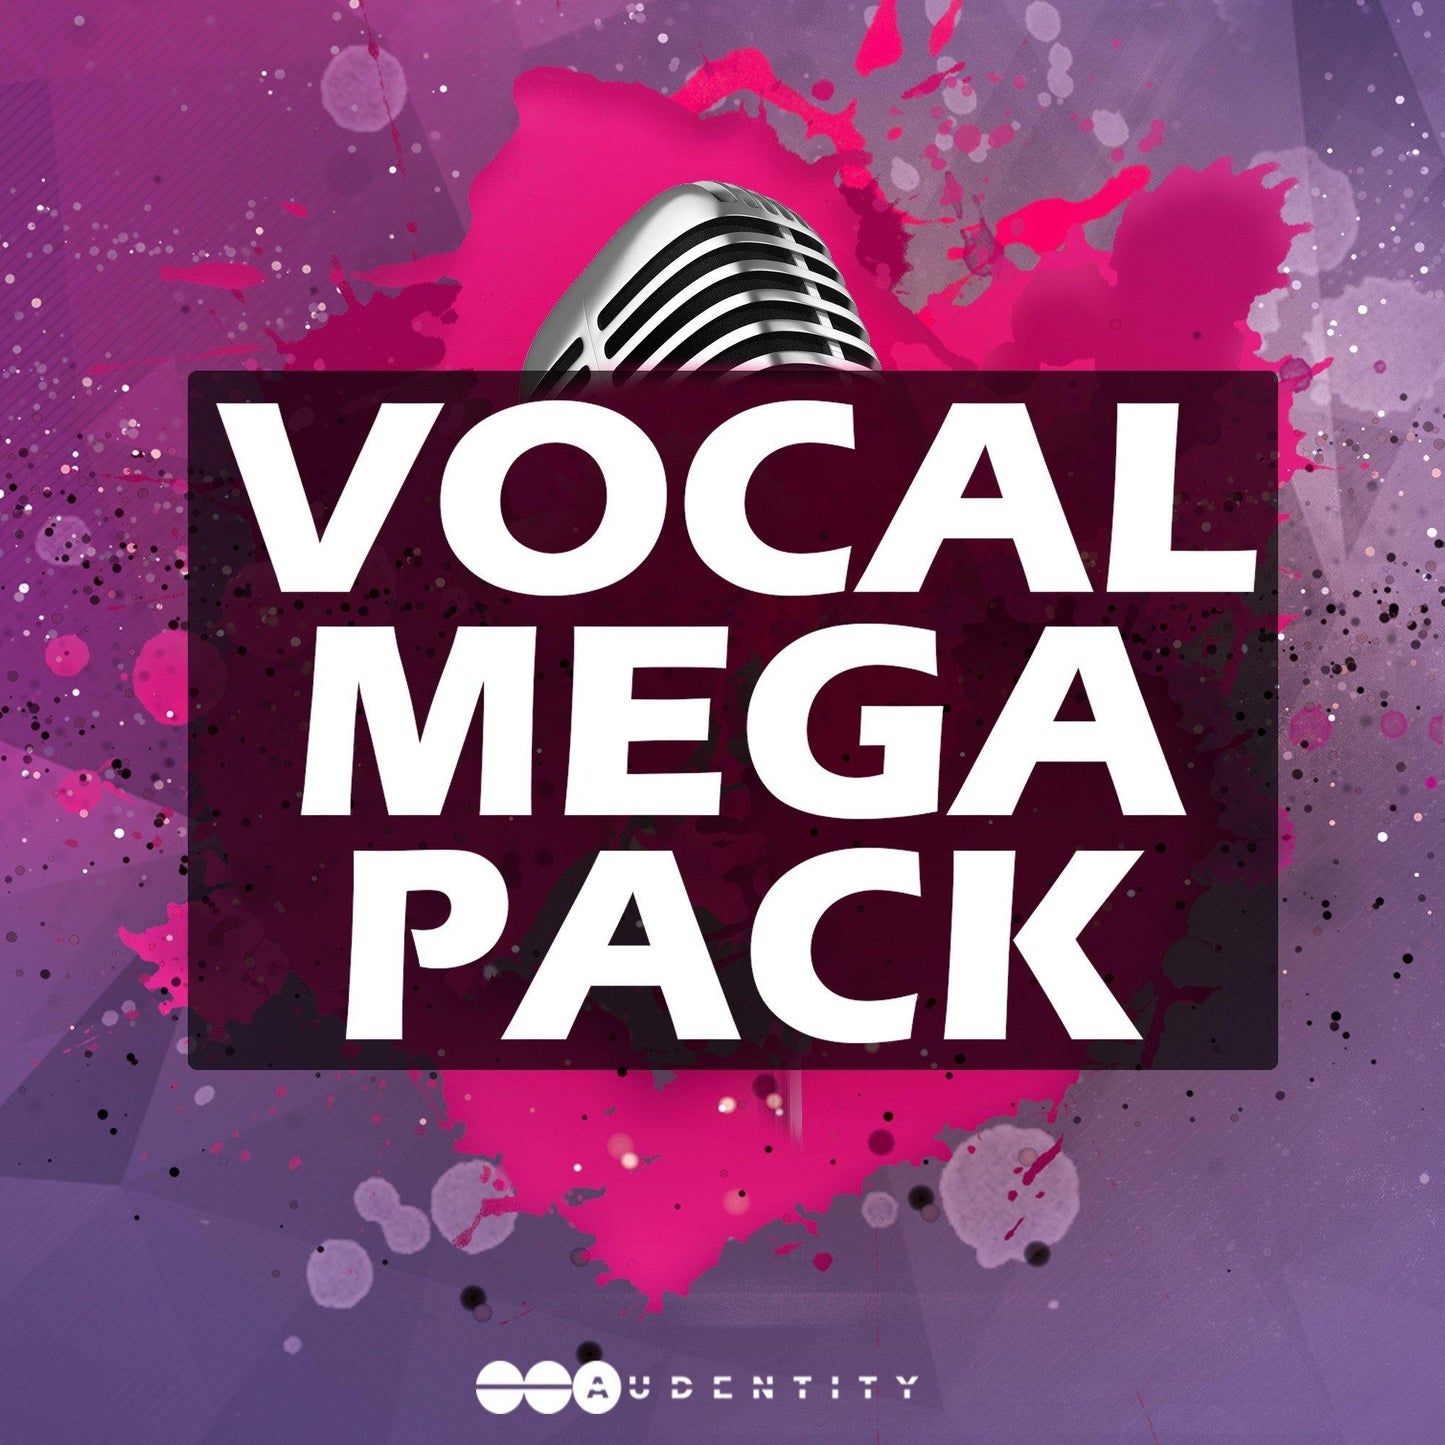 Vocal Megapack